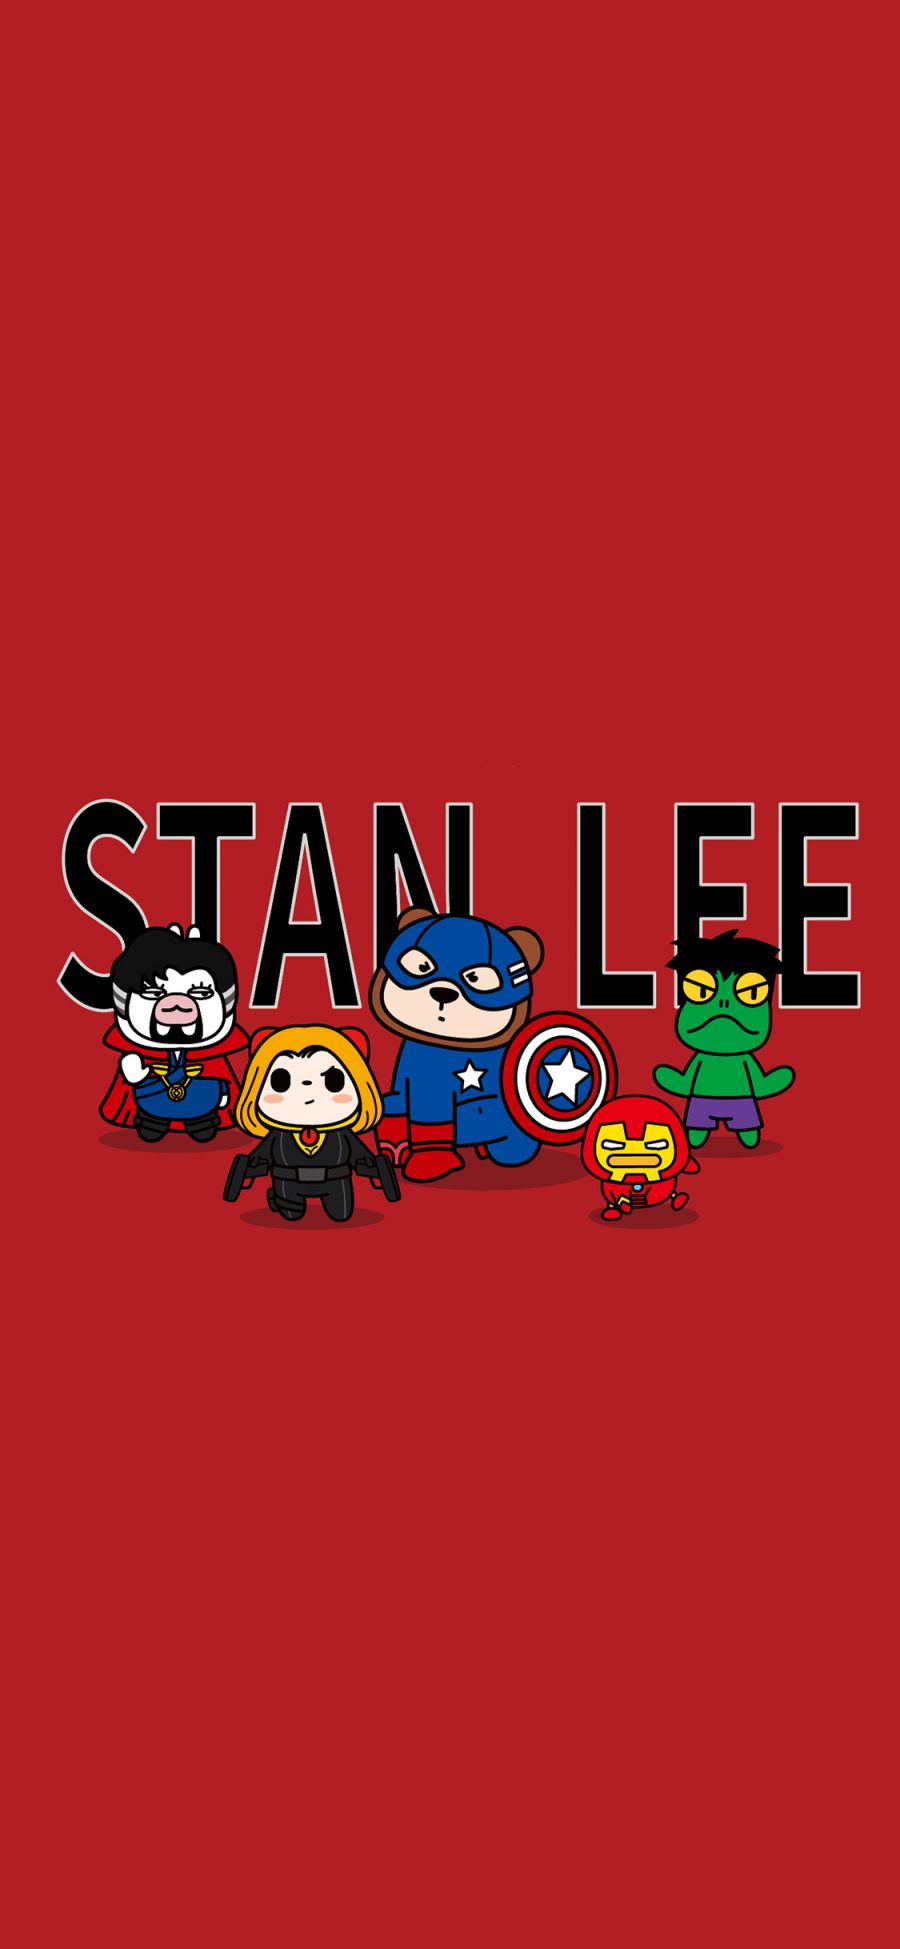 [2436×1125]斯坦·李 Stan Lee 超级英雄 夏萌猫 红色 漫威 苹果手机动漫壁纸图片